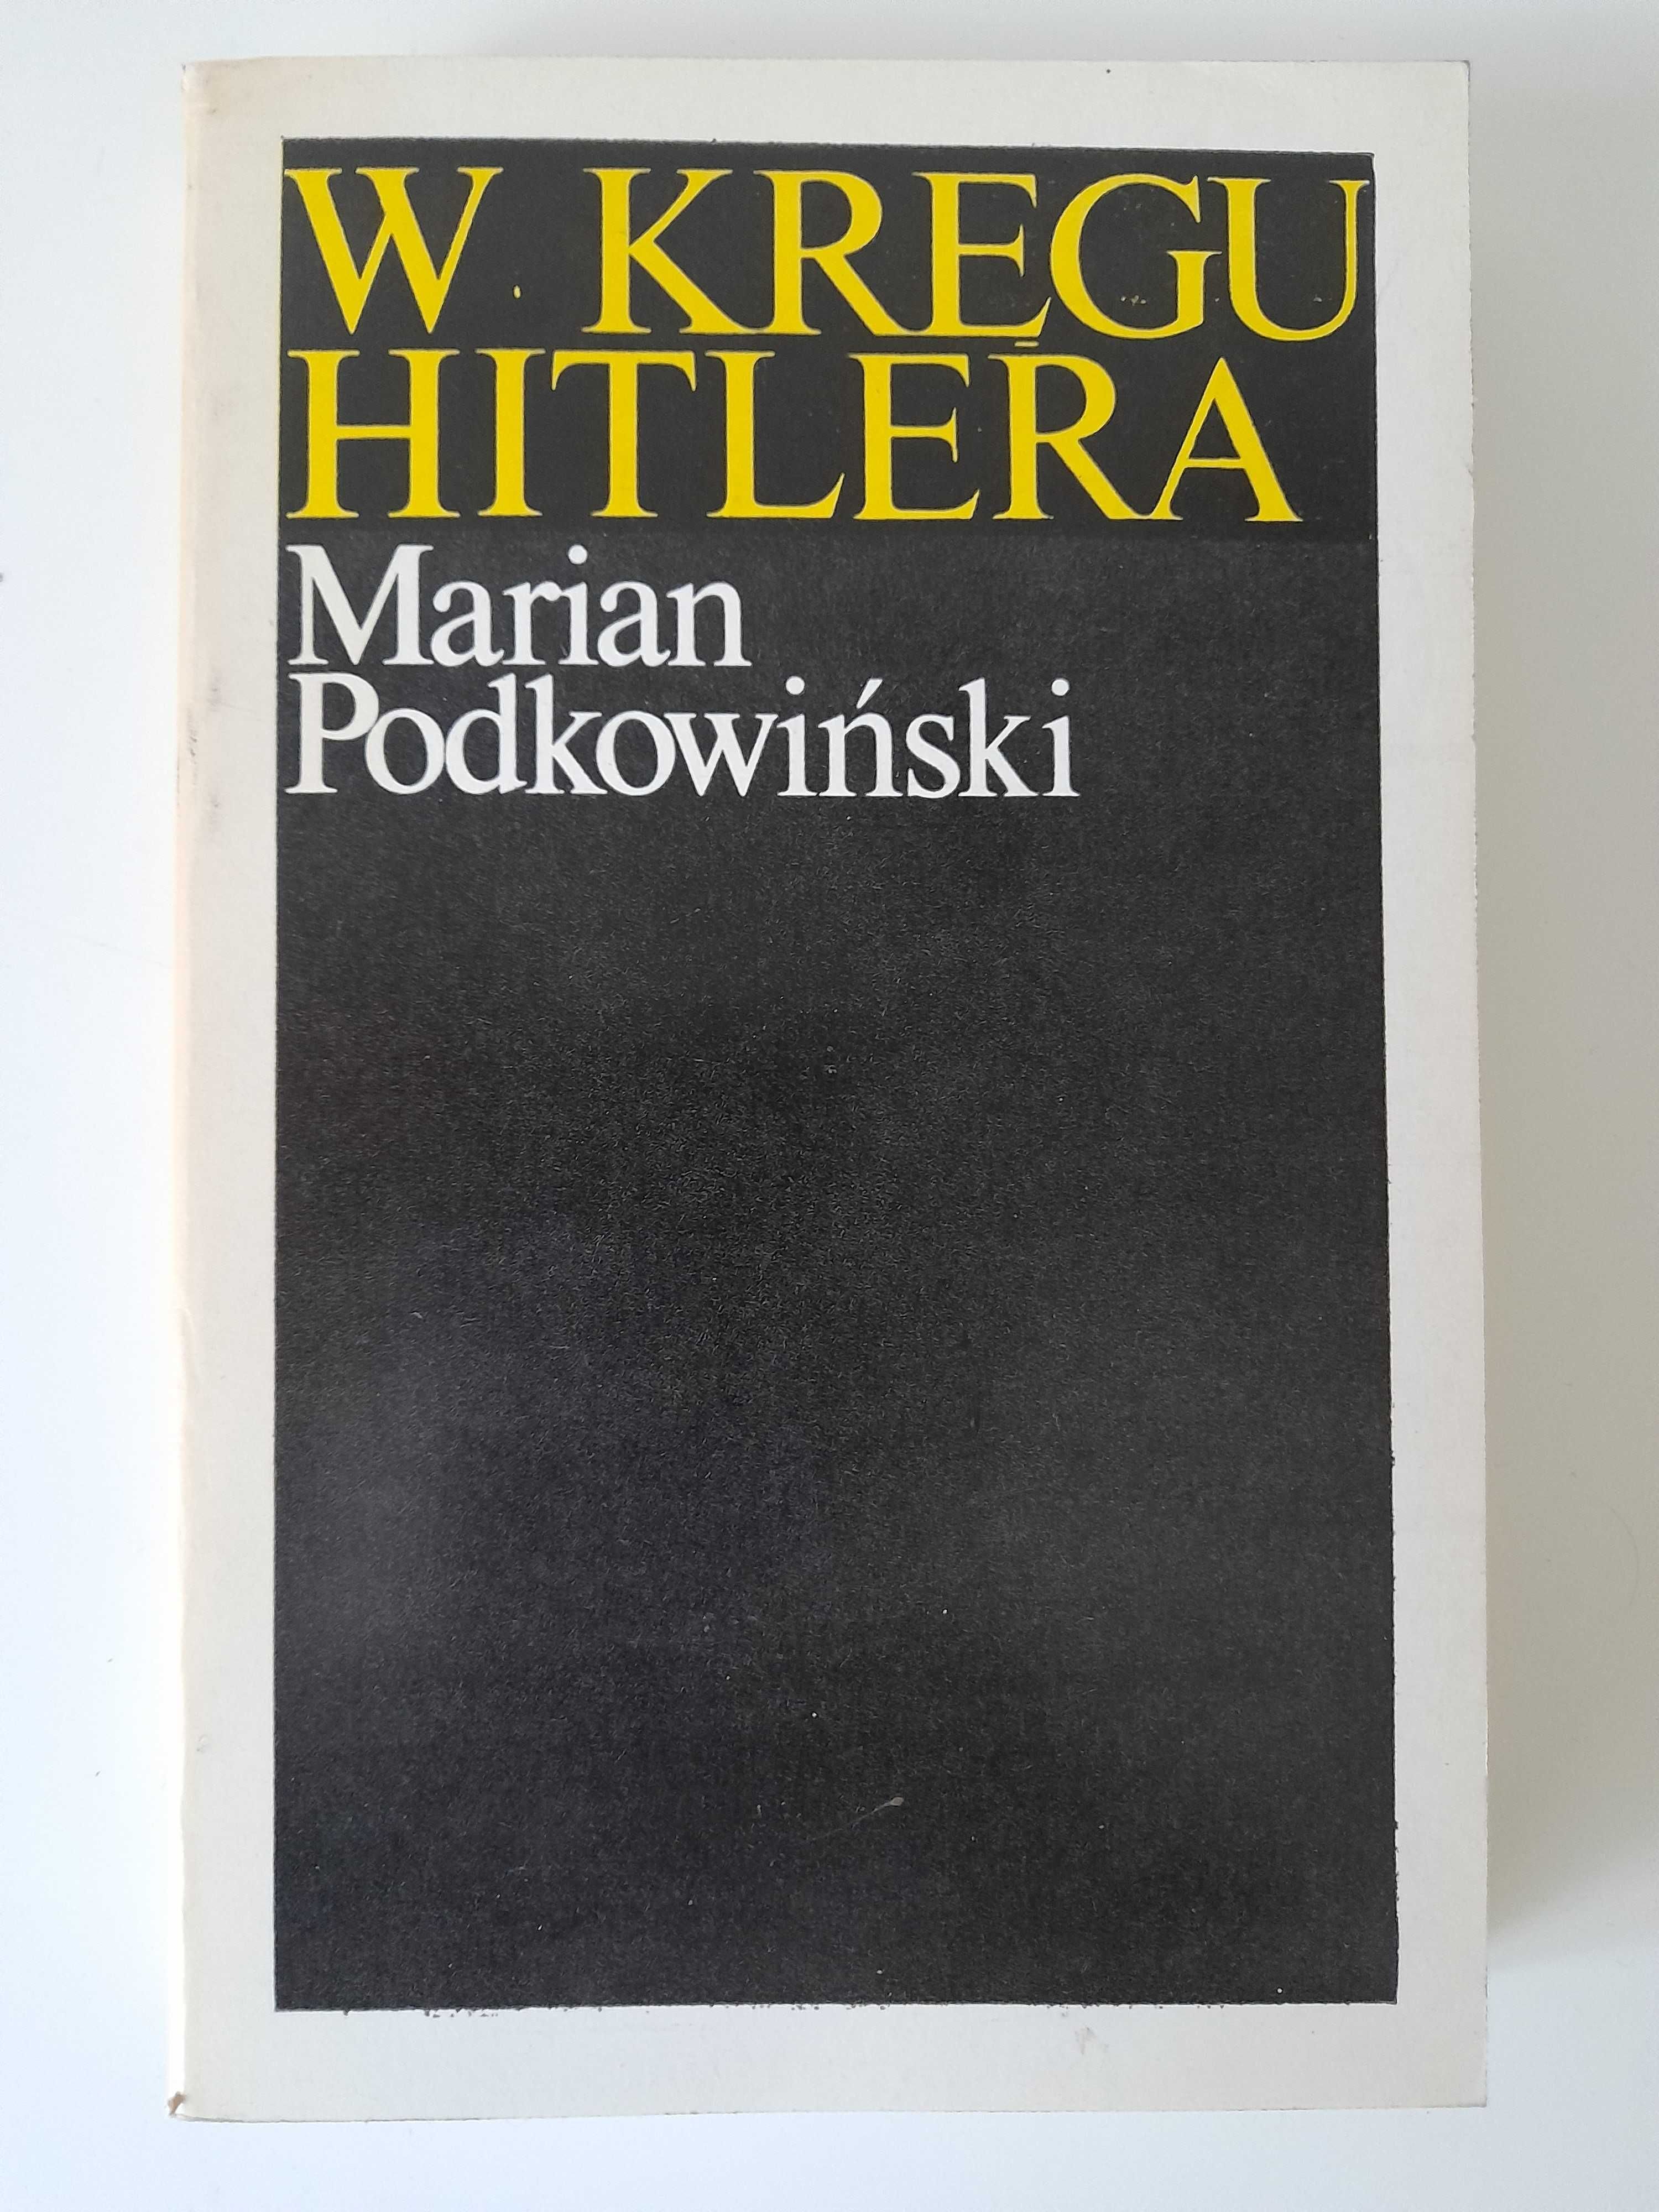 W kręgu Hitlera Marian Podkowiński